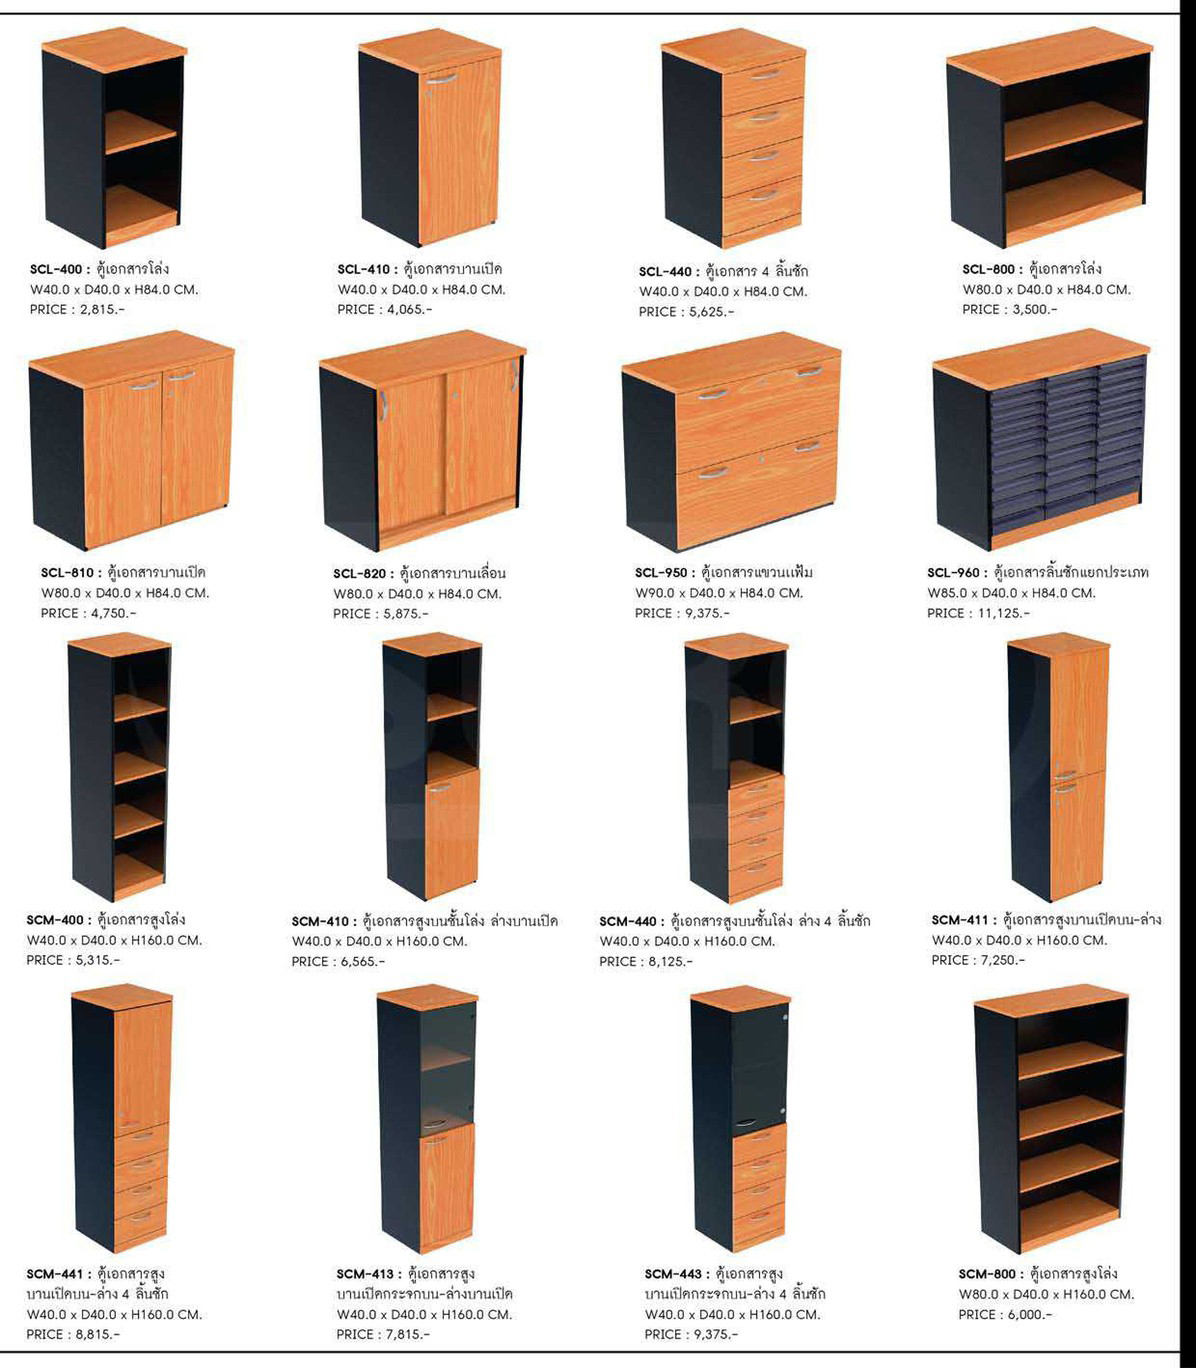 78052::SCM-400::A Sure cabinet with open shelves. Dimension (WxDxH) cm : 40x40x160